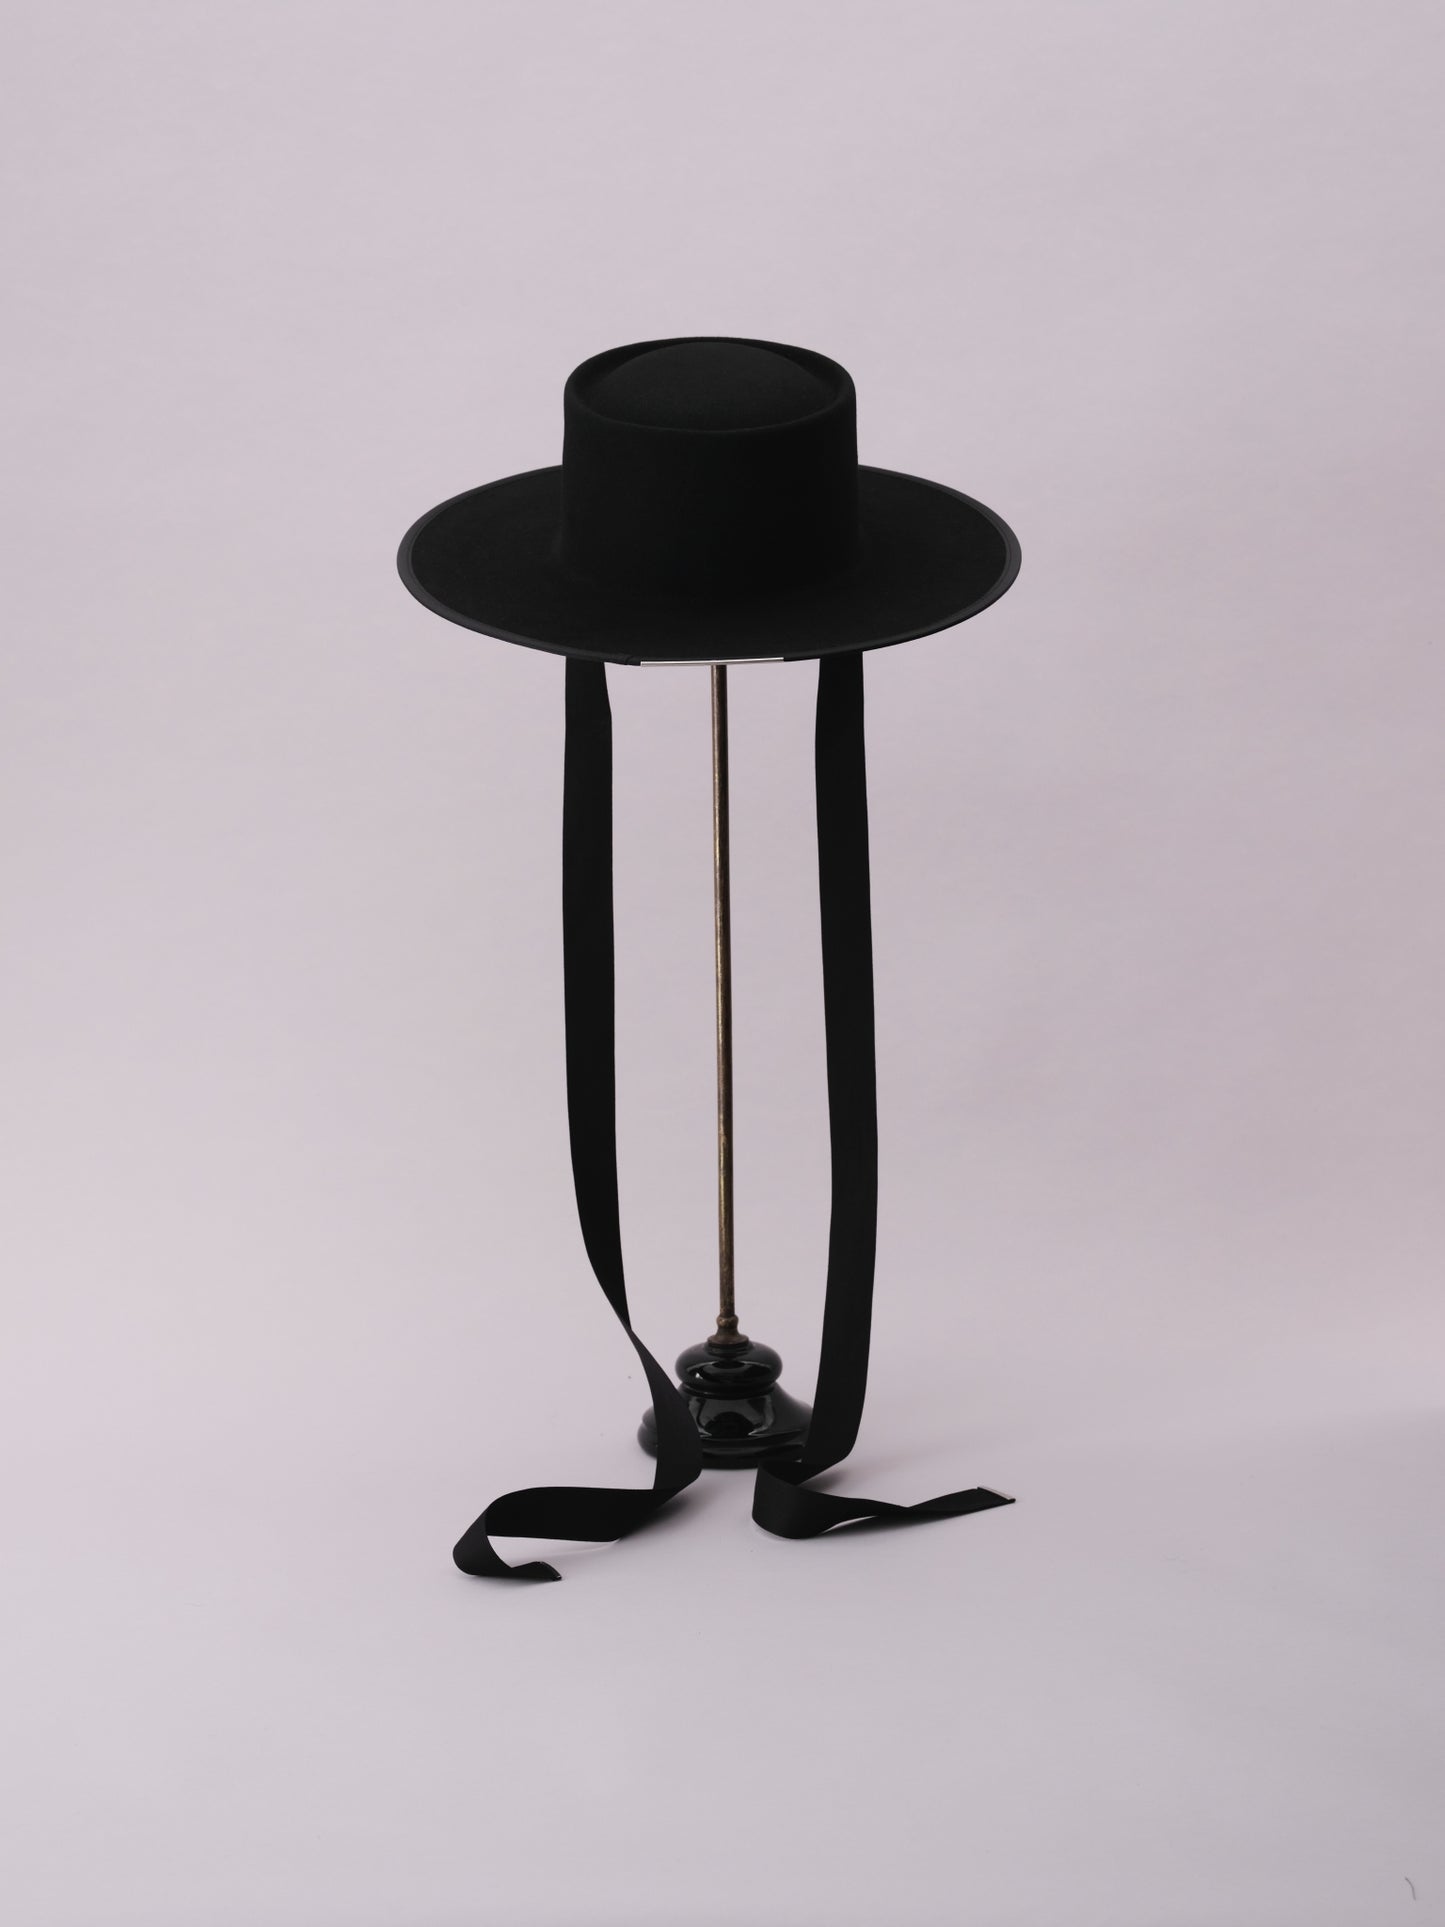 Amish Hat